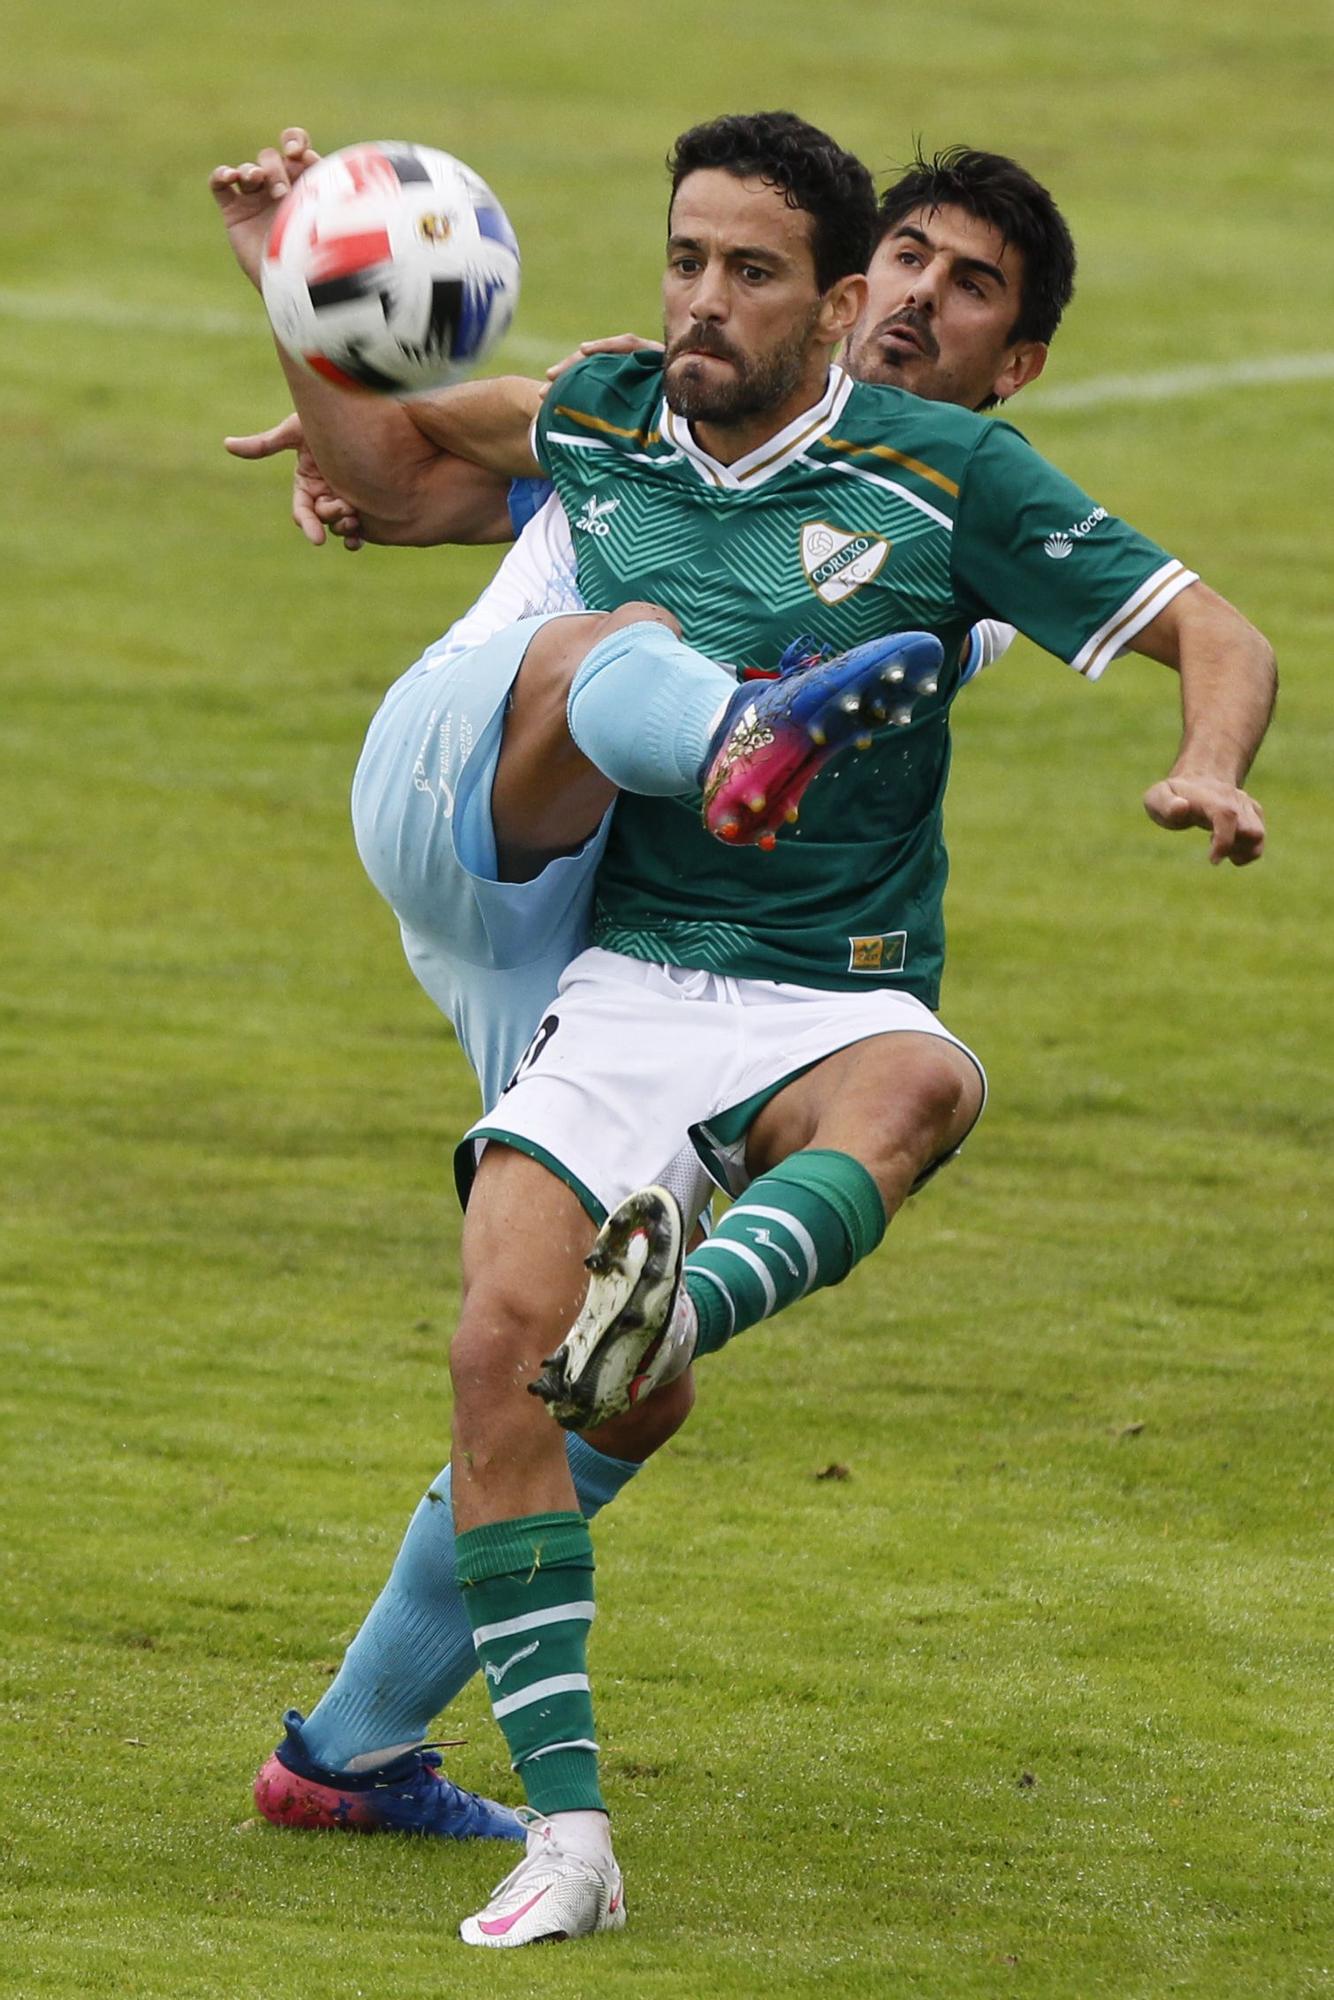 Coruxo-Compostela, un empate sin goles en O Vao